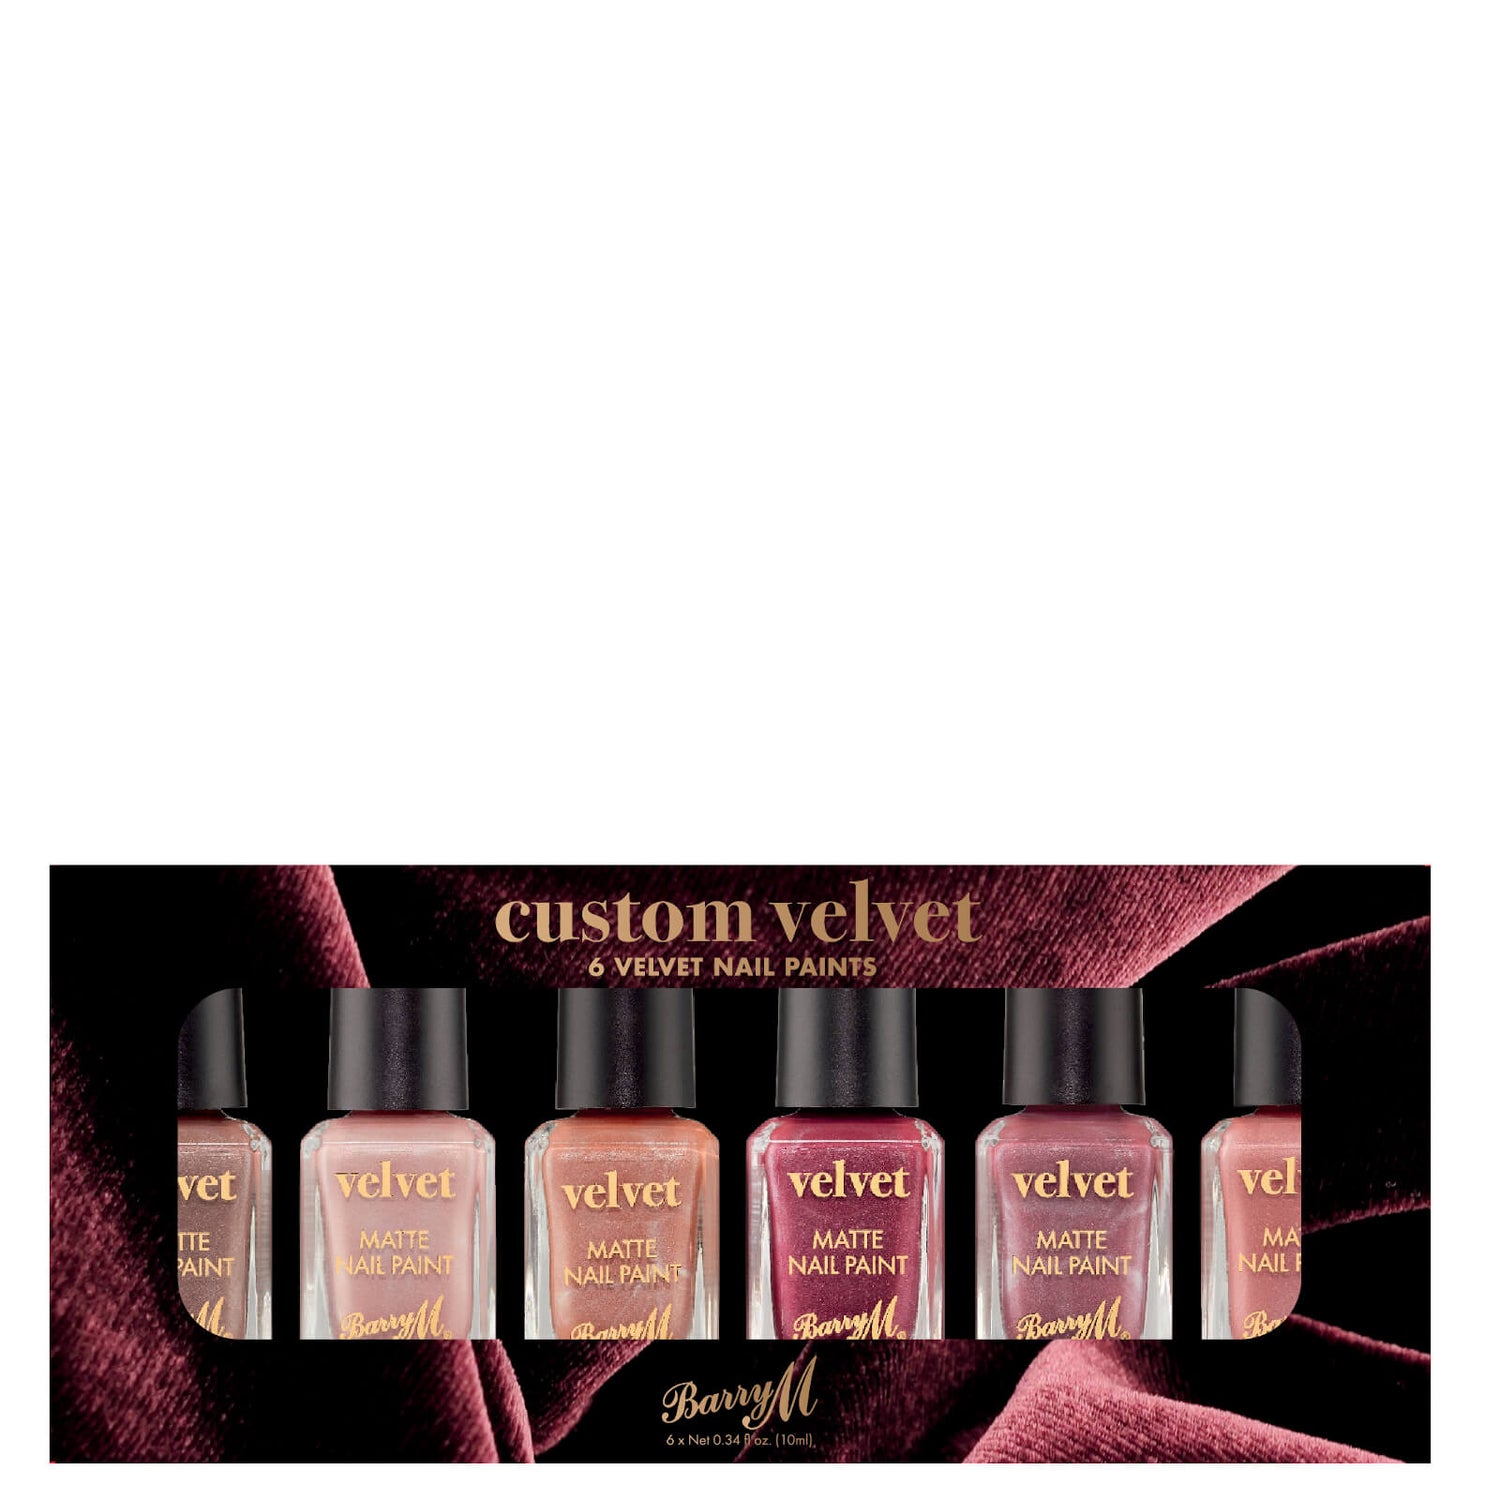 Barry M Cosmetics Nail Paint Gift Set - Custom Velvet